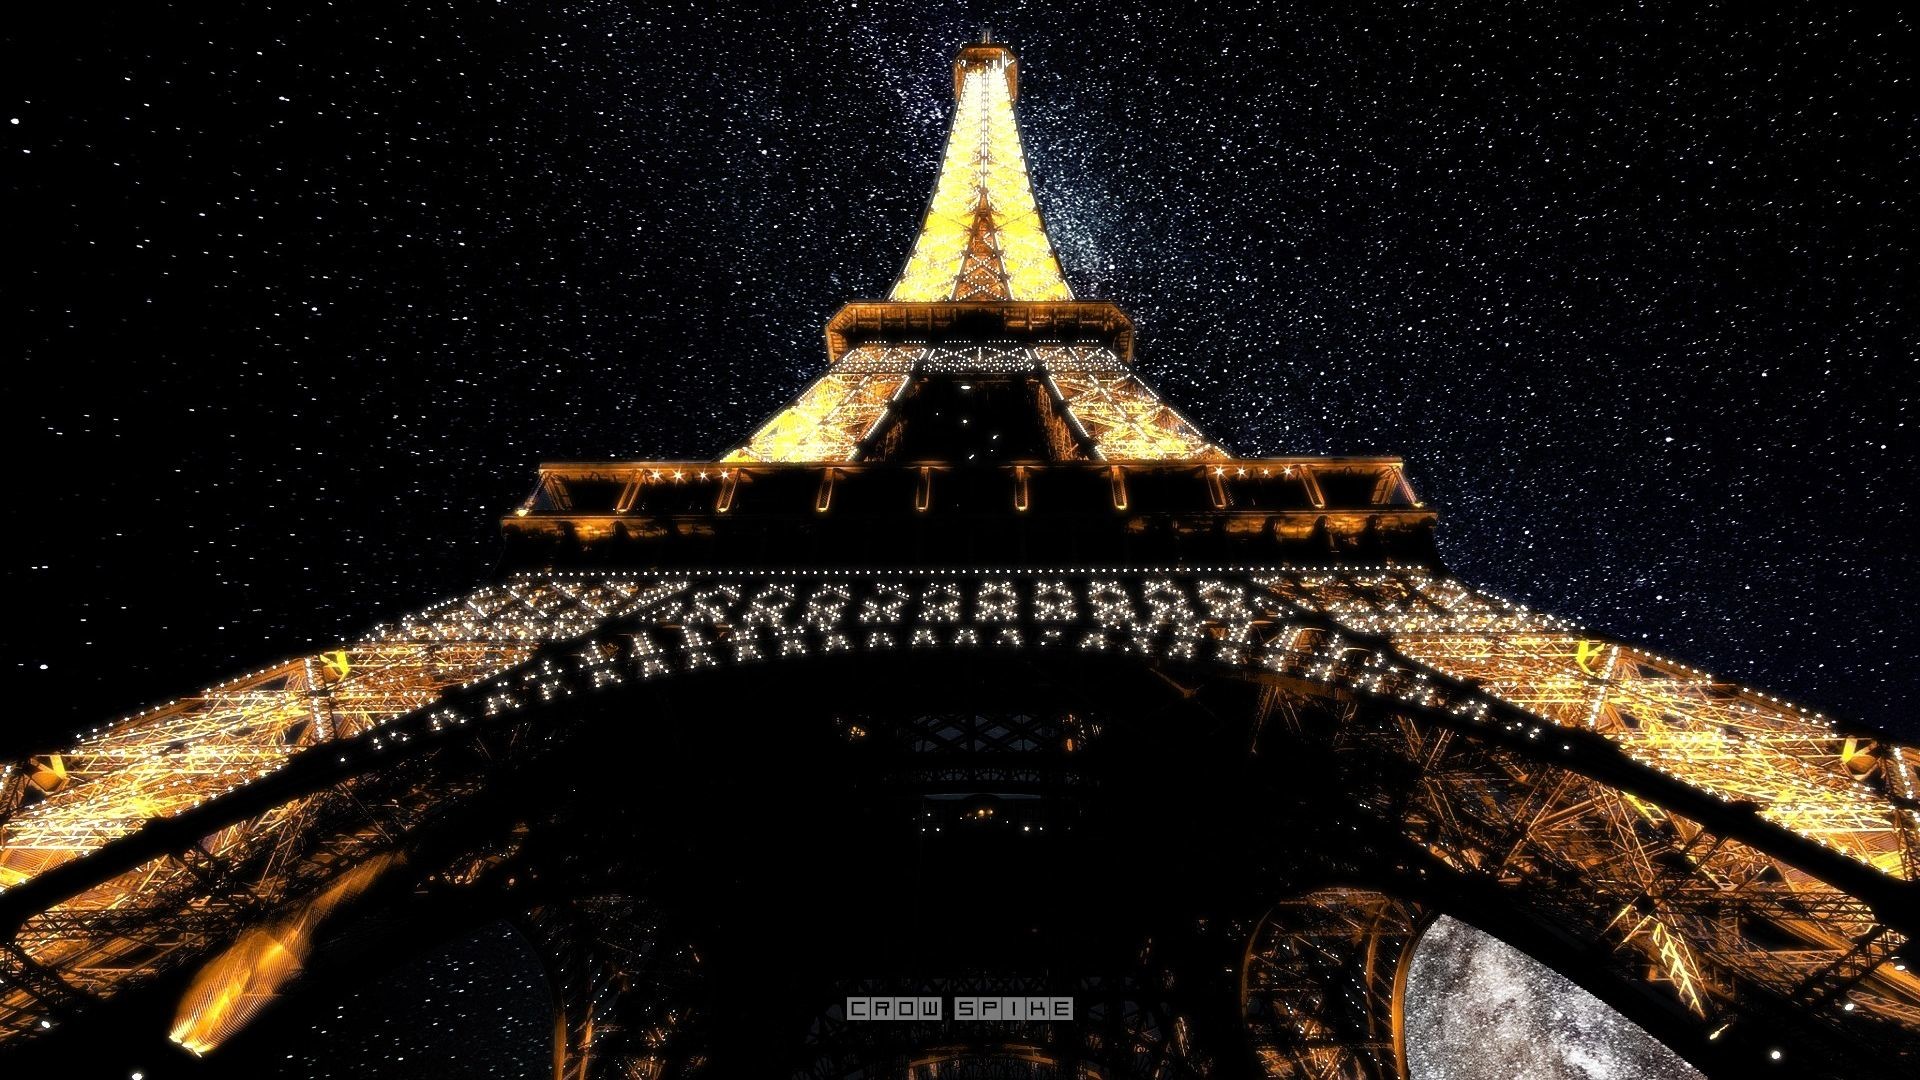 1920x1080 Paris Eiffel Tower at Night HD Wallpaper. Â« Â»